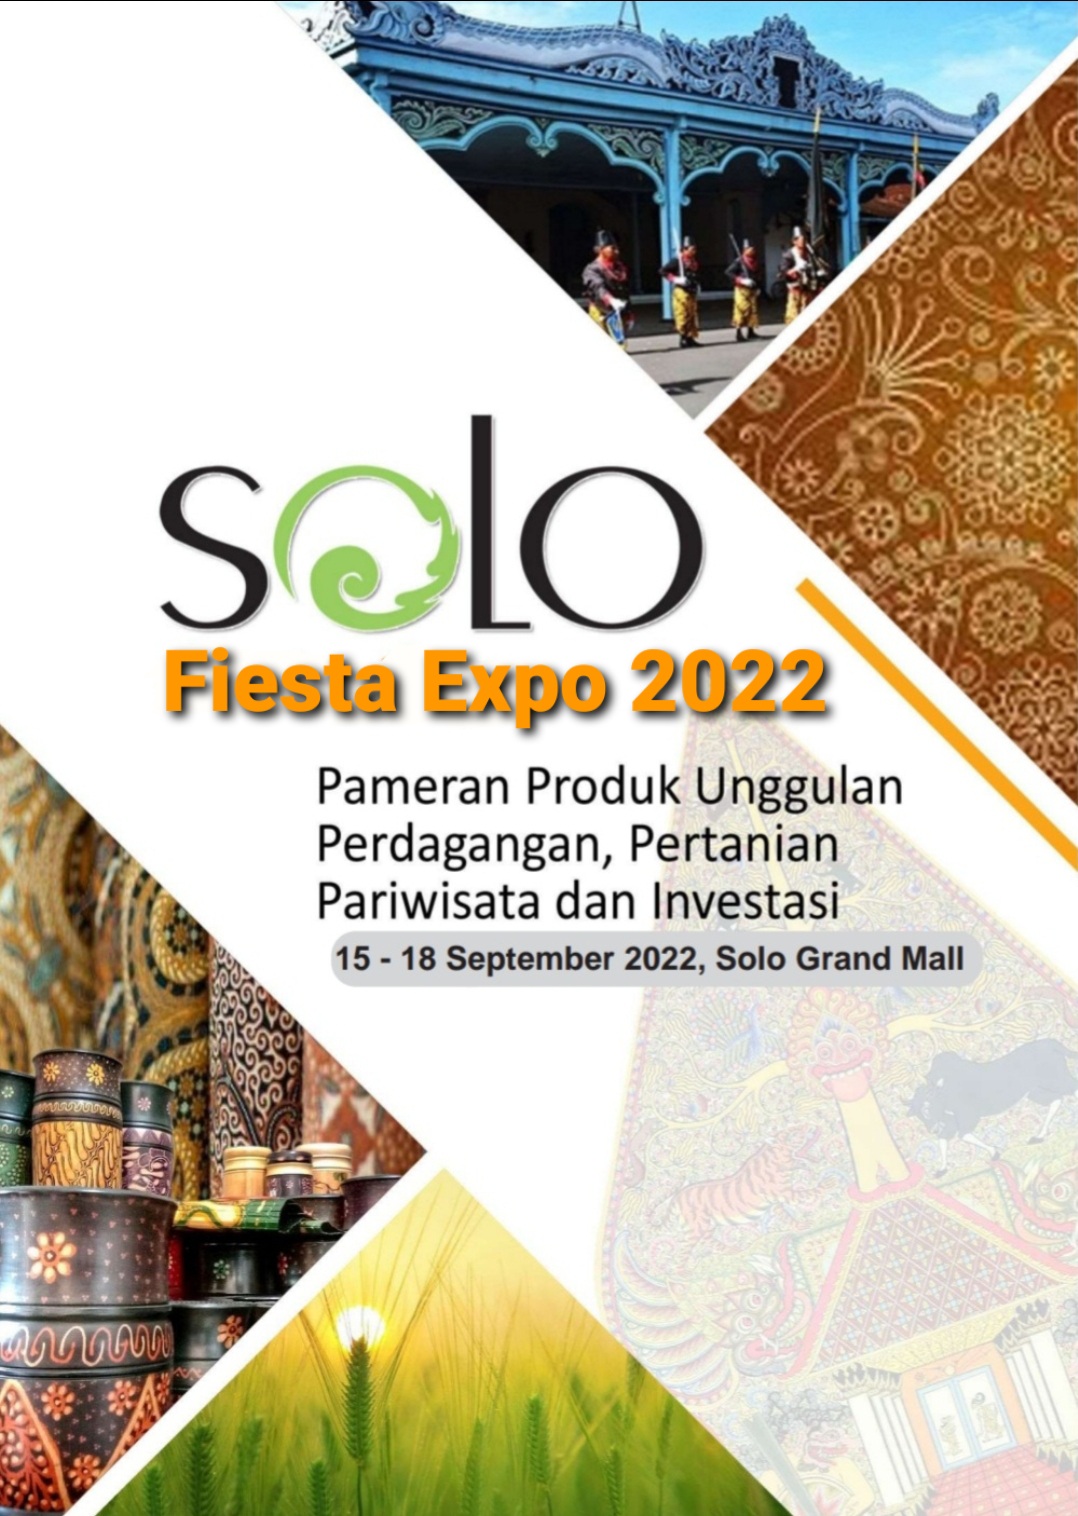 SOLO FIESTA EXPO 2022 (PAMERAN PRODUK UNGGULAN, PARIWISATA, CRAFT, INVESTASI)